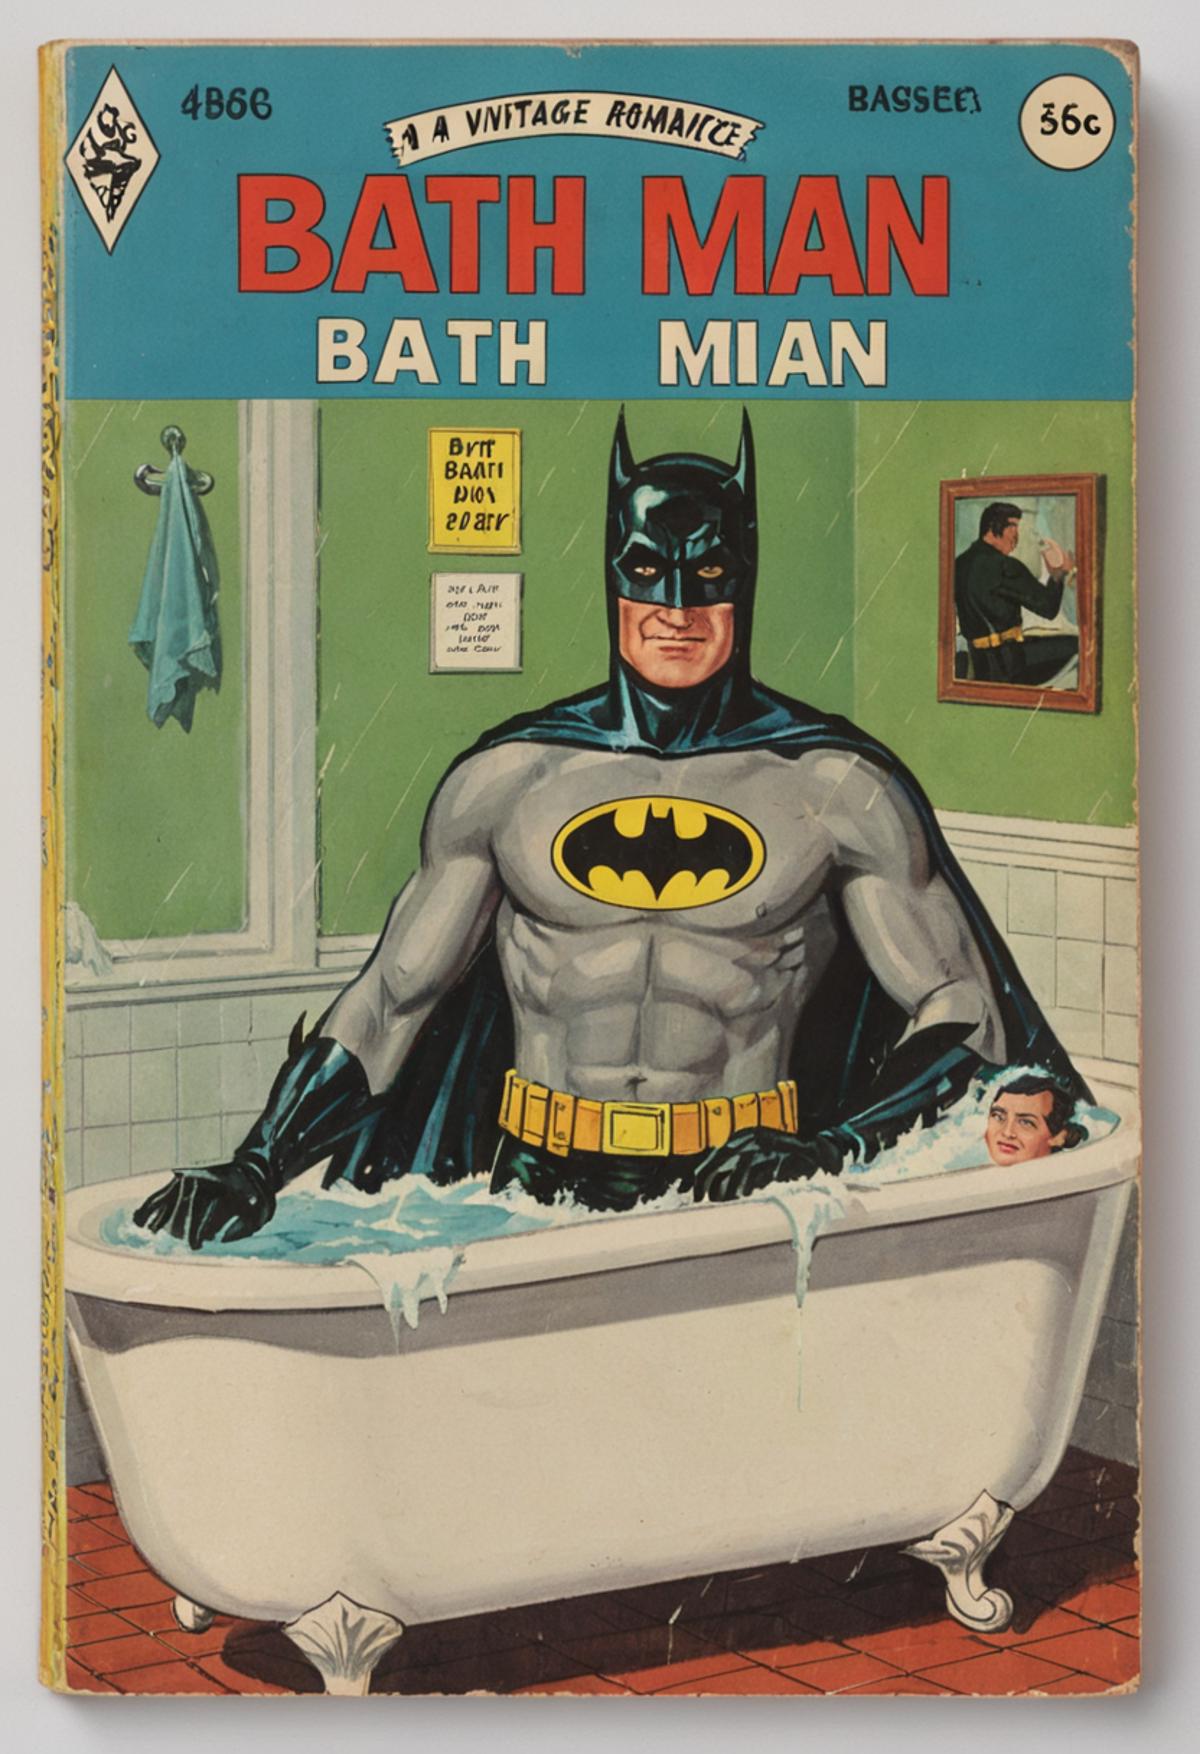 Batman and Robin in a Bathtub